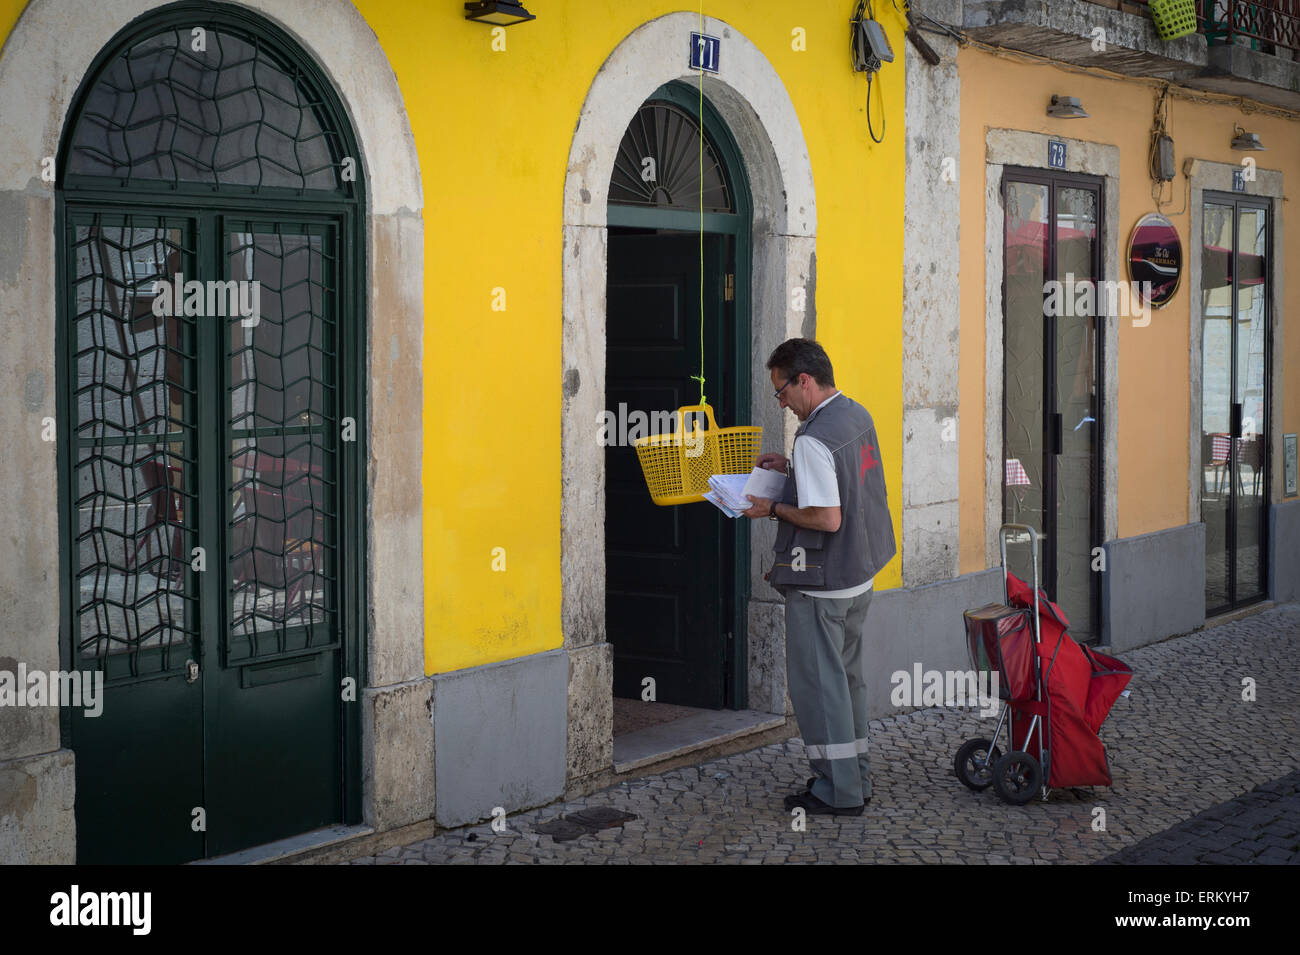 Postbote, der die Post ausliefert, indem er Briefe in einen Korb legt, der dann hochgezogen wird. Lissabon, Portugal. Stockfoto